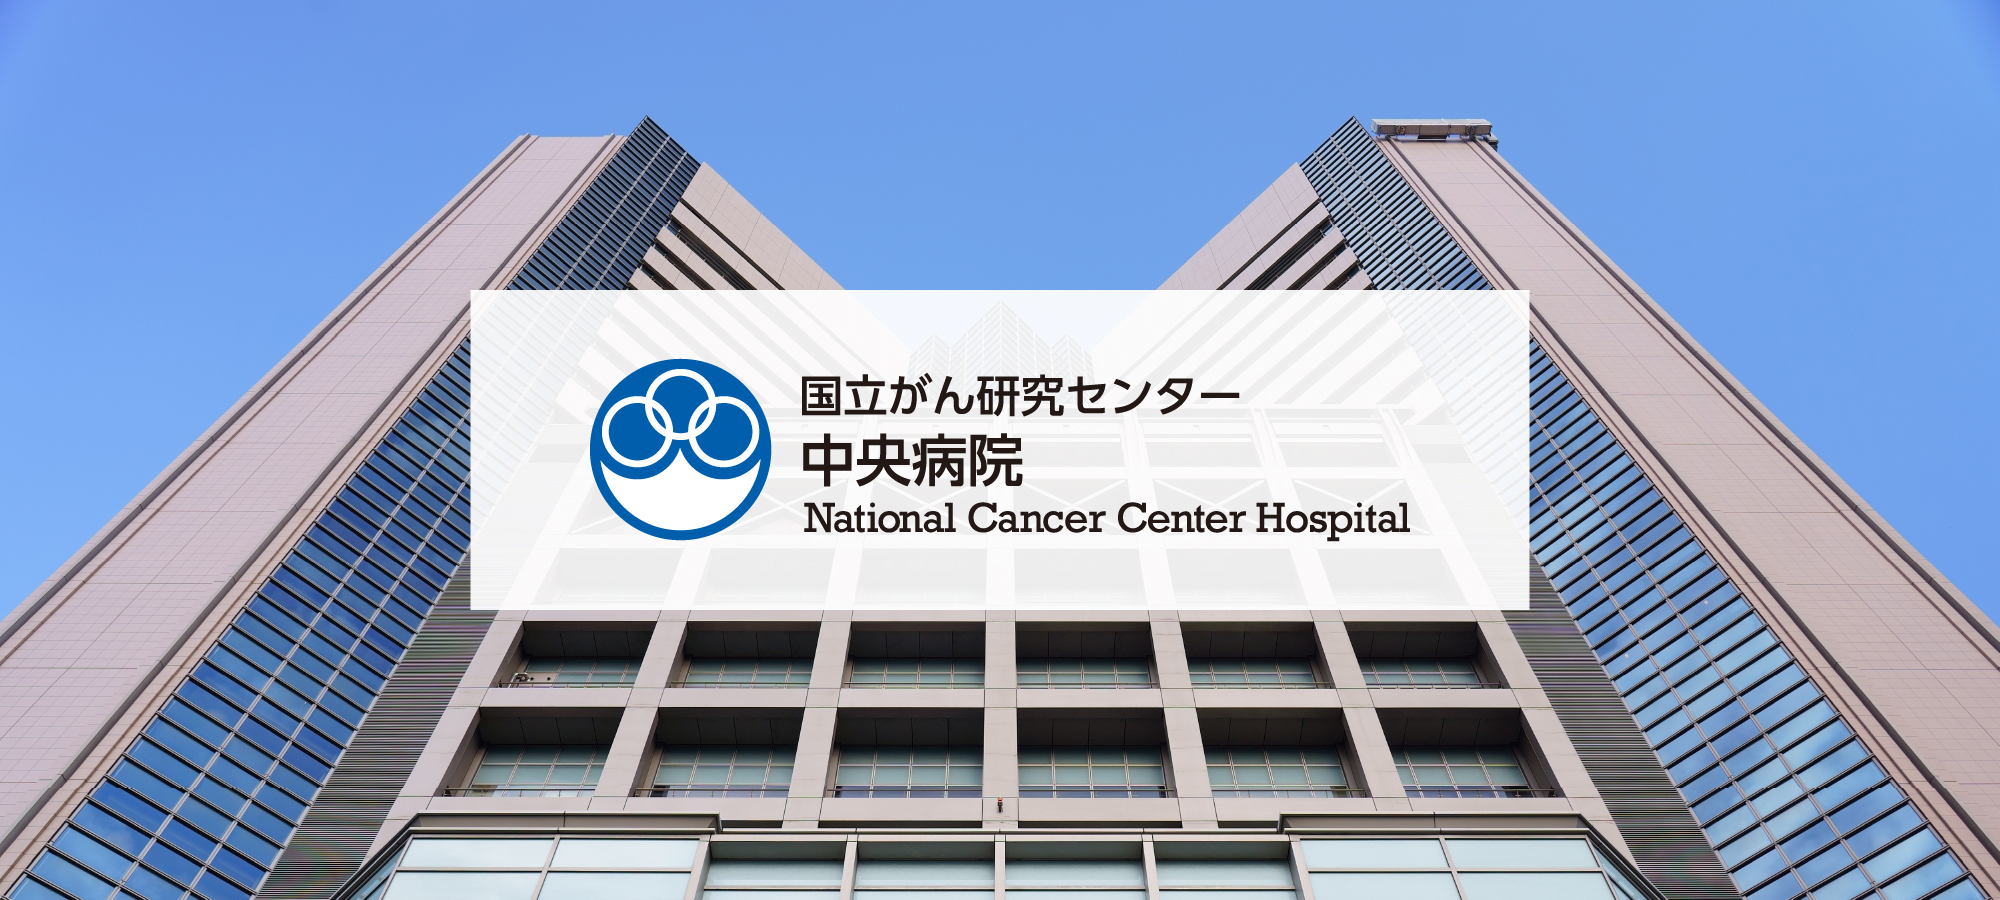 โรงพยาบาลศูนย์มะเร็งแห่งชาติ